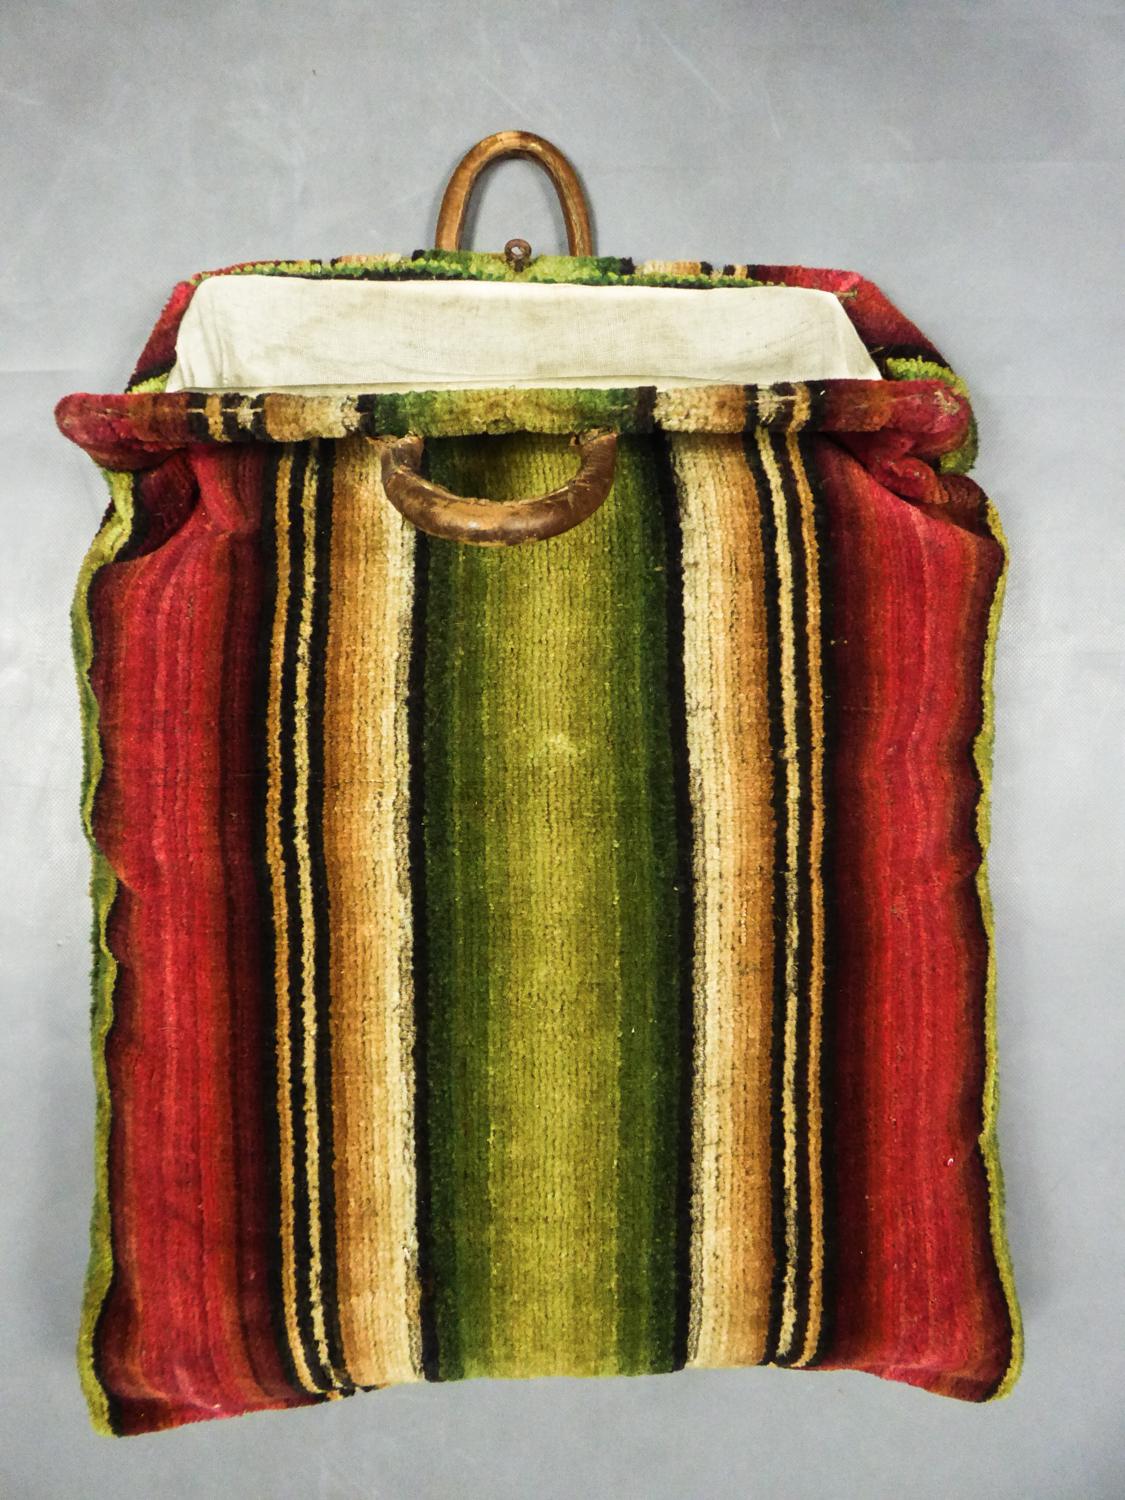 Fin du 18e siècle
France

Rare Grand sac de voyage en tapisserie de laine datant du 18ème siècle. Peau de veau blanche recouverte d'une tapisserie de laine brodée et nouée, puis coupée pour donner l'effet de velours. De magnifiques rayures ombragées